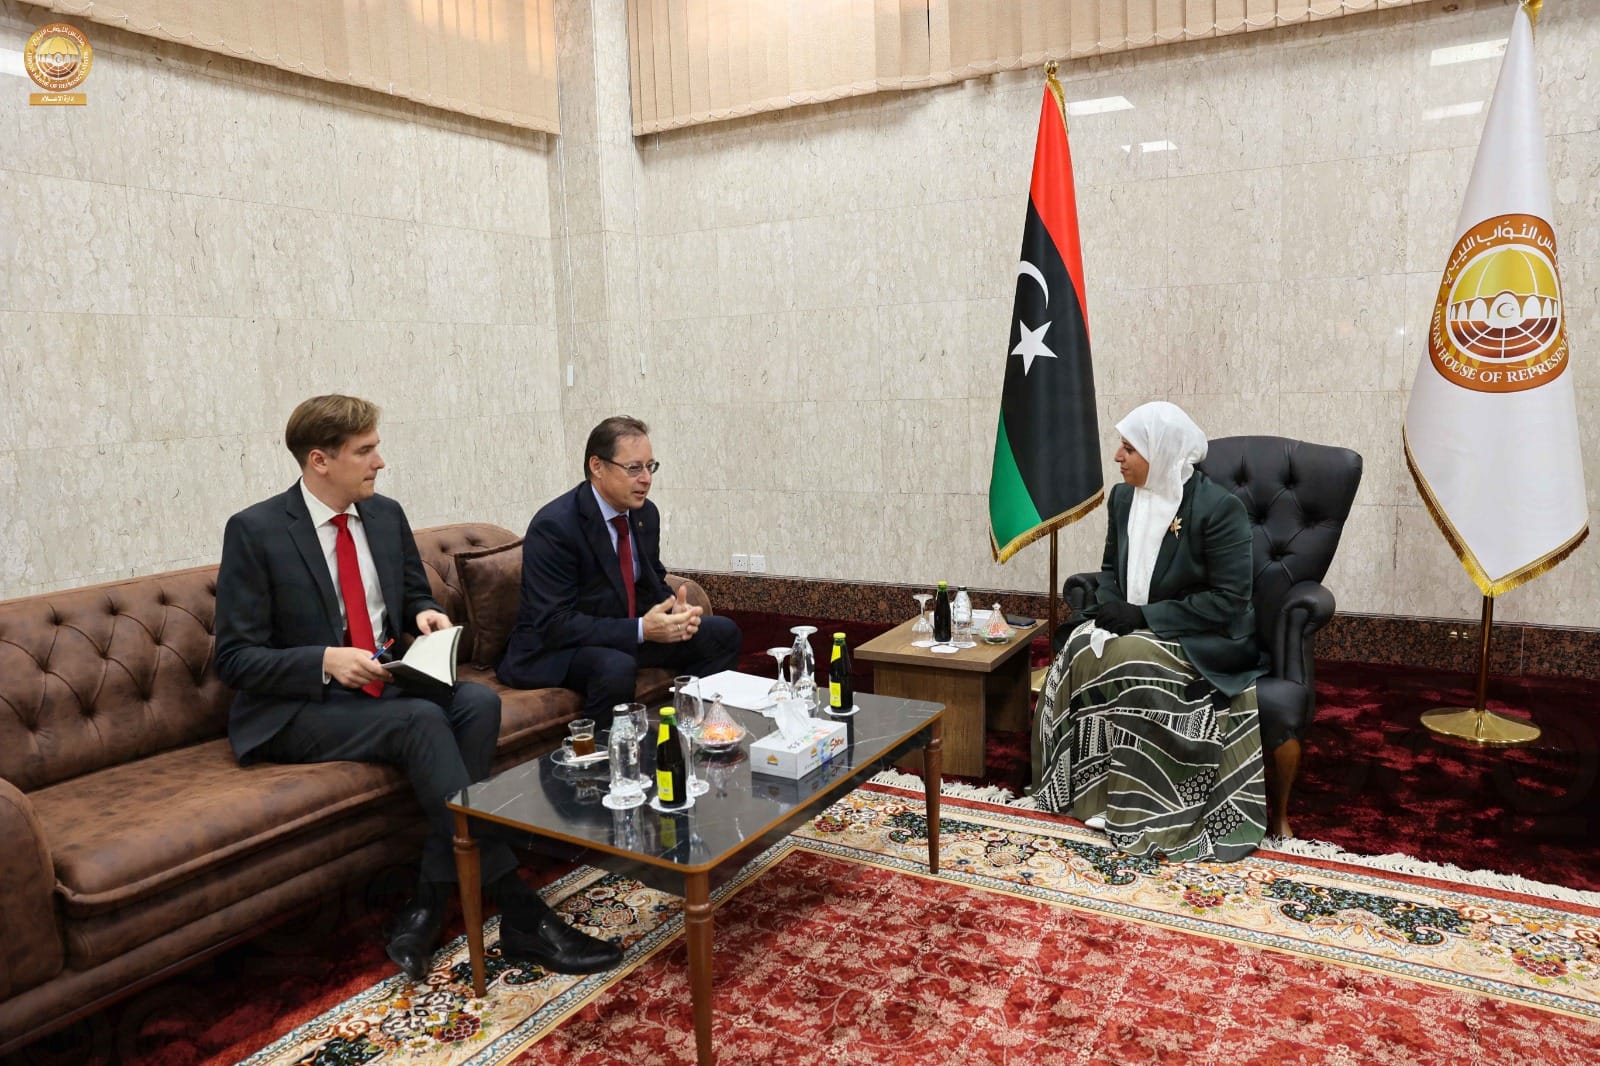 المسماري تبحث مع السفير الروسي الدفع بالعملية السياسية في ليبيا